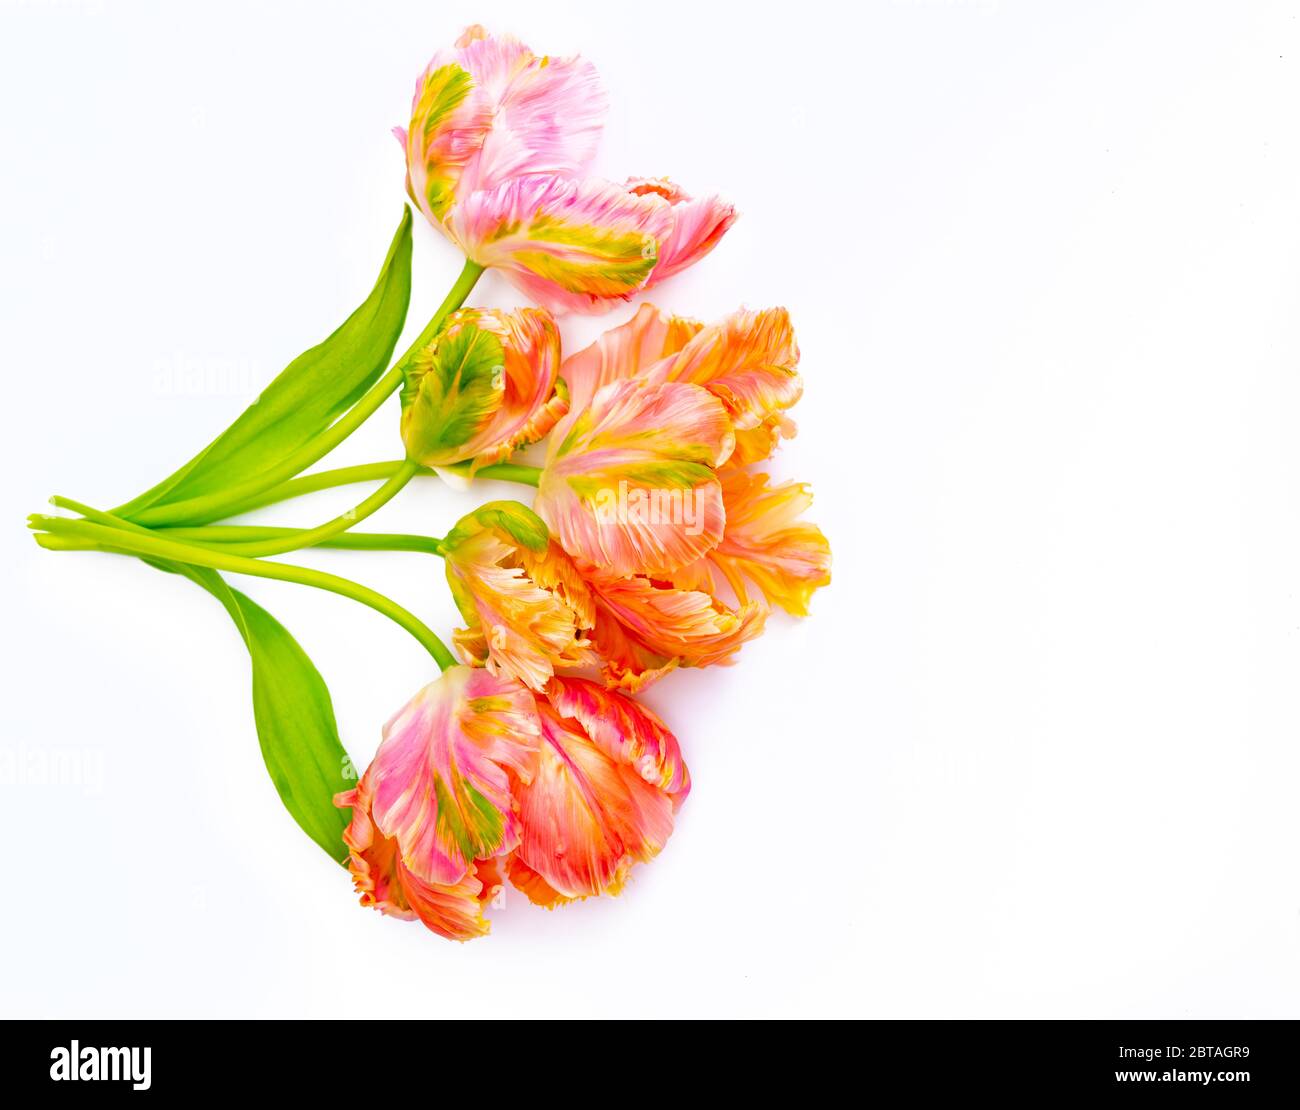 Bunte rosa Lachs Papagei Tulpen auf weißem Hintergrund kopieren Raum Draufsicht, Feier Karte, Abkotierung oder Tapete Konzept Stockfoto